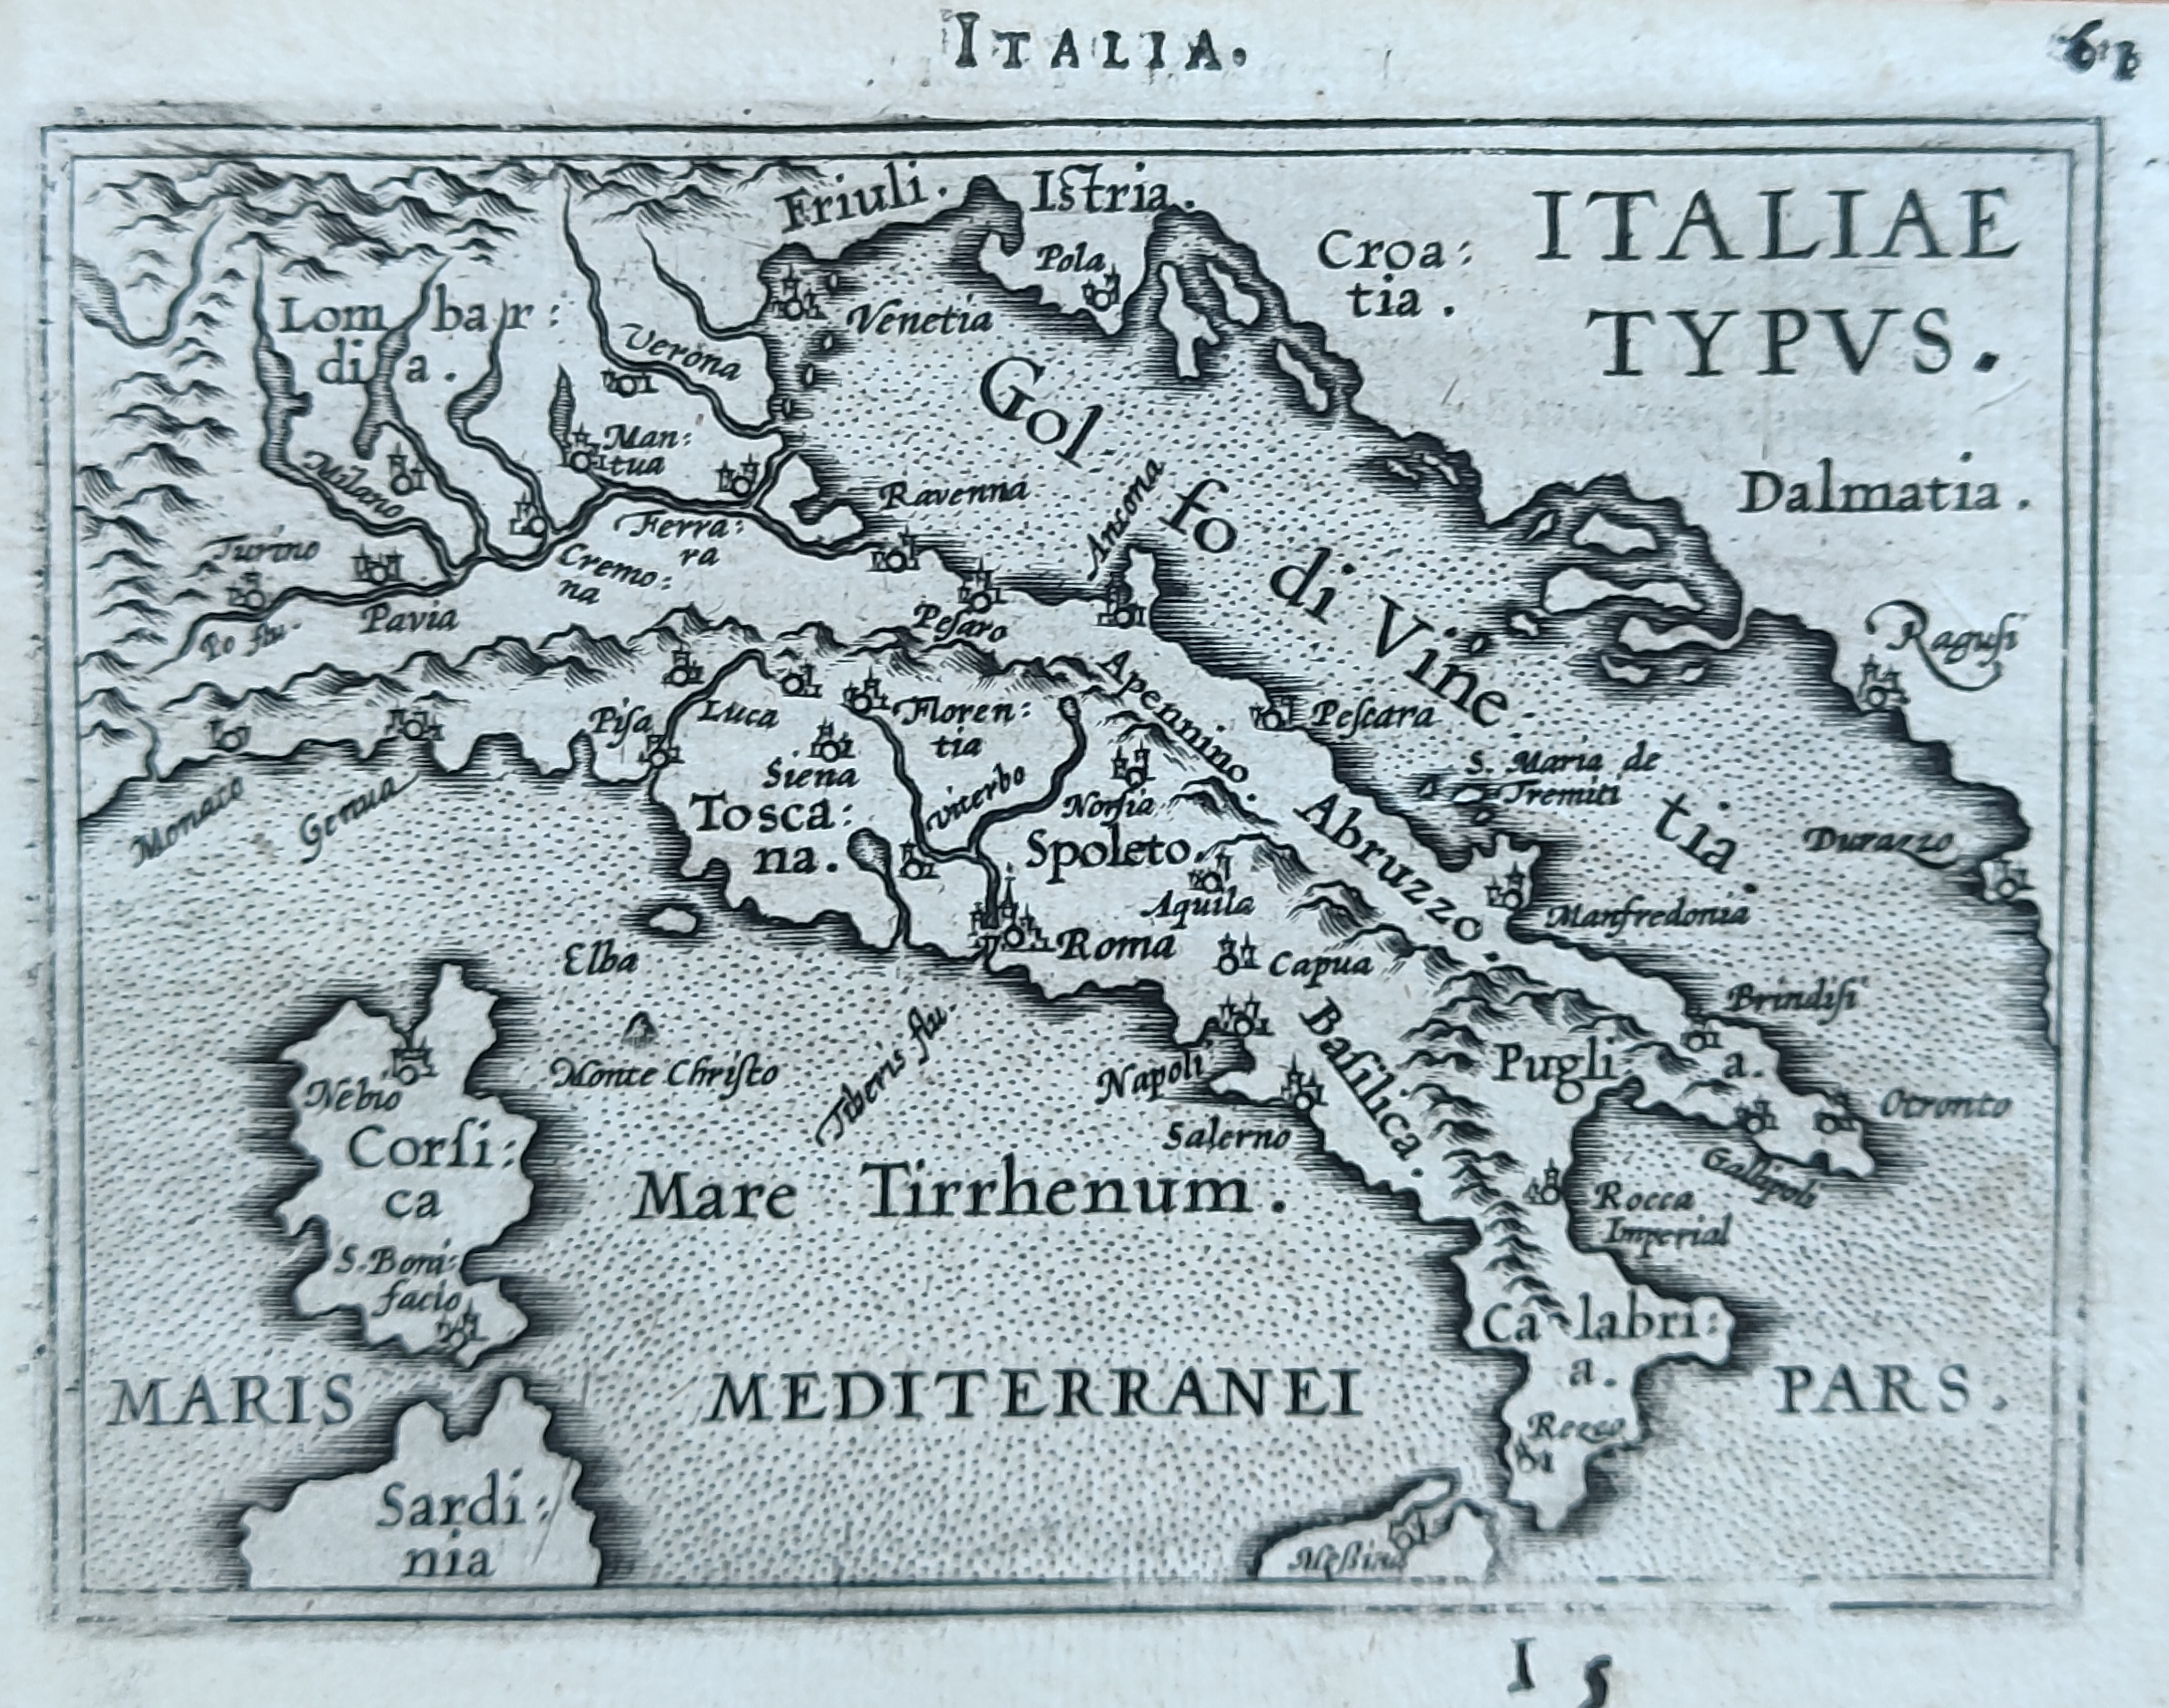 Italiae Typus